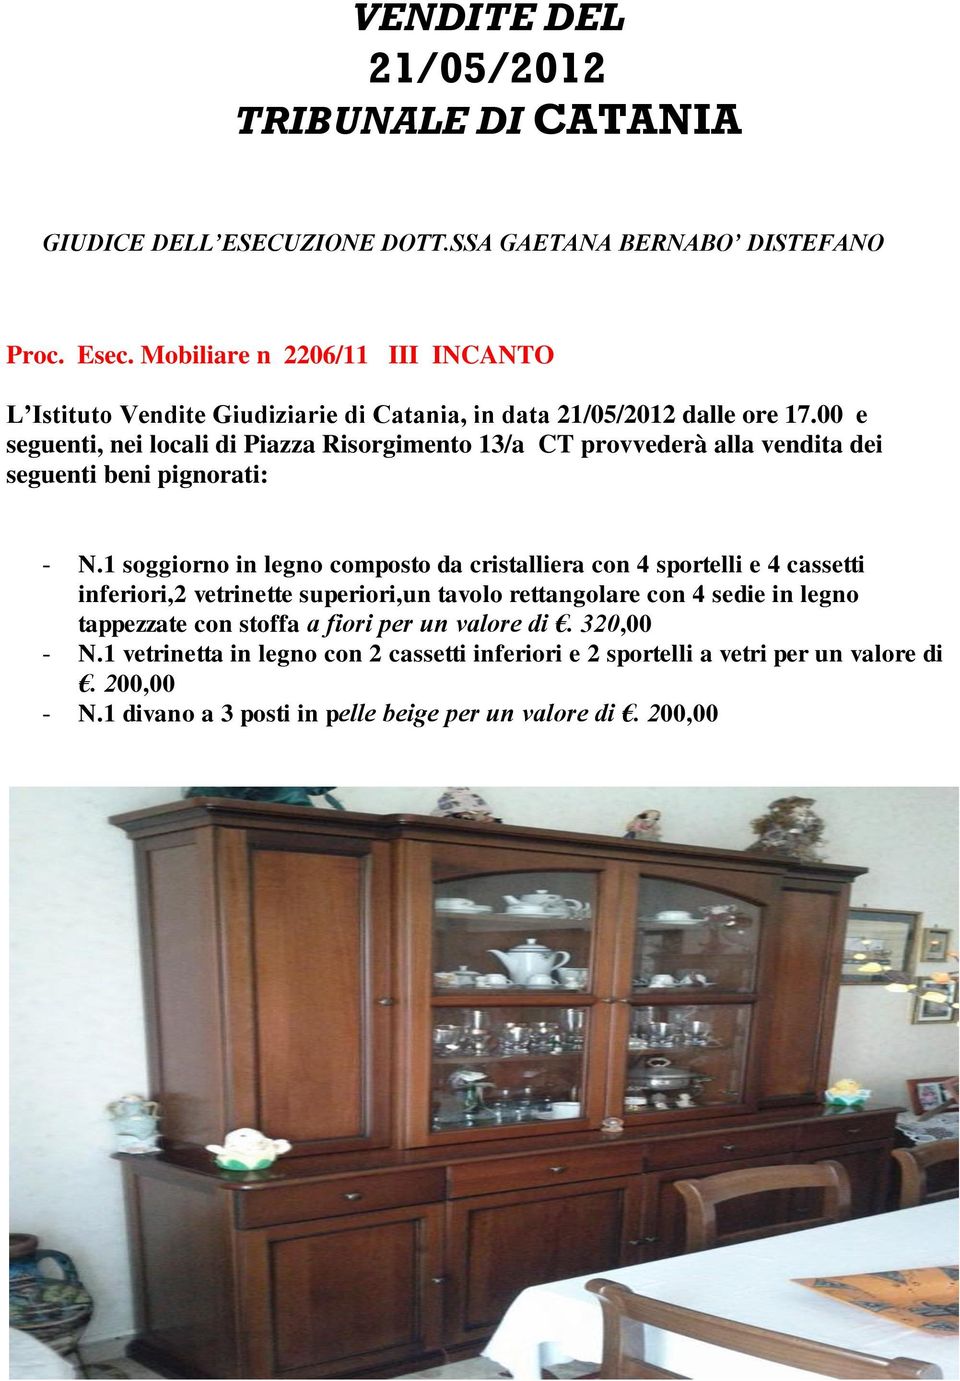 00 e seguenti, nei locali di Piazza Risorgimento 13/a CT provvederà alla vendita dei seguenti beni - N.